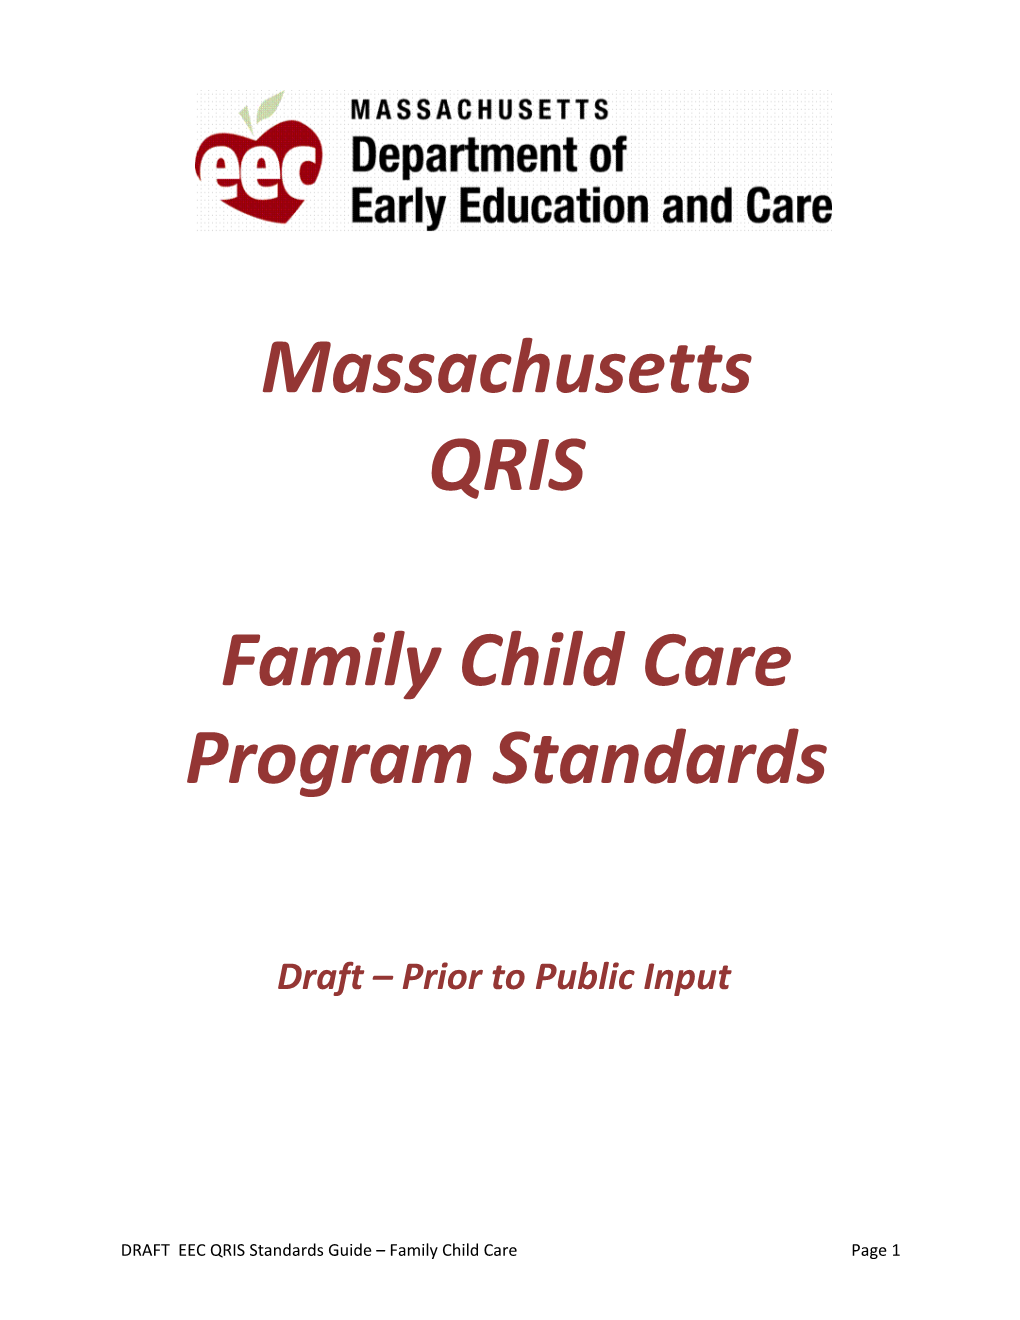 Family Child Care Program Standards